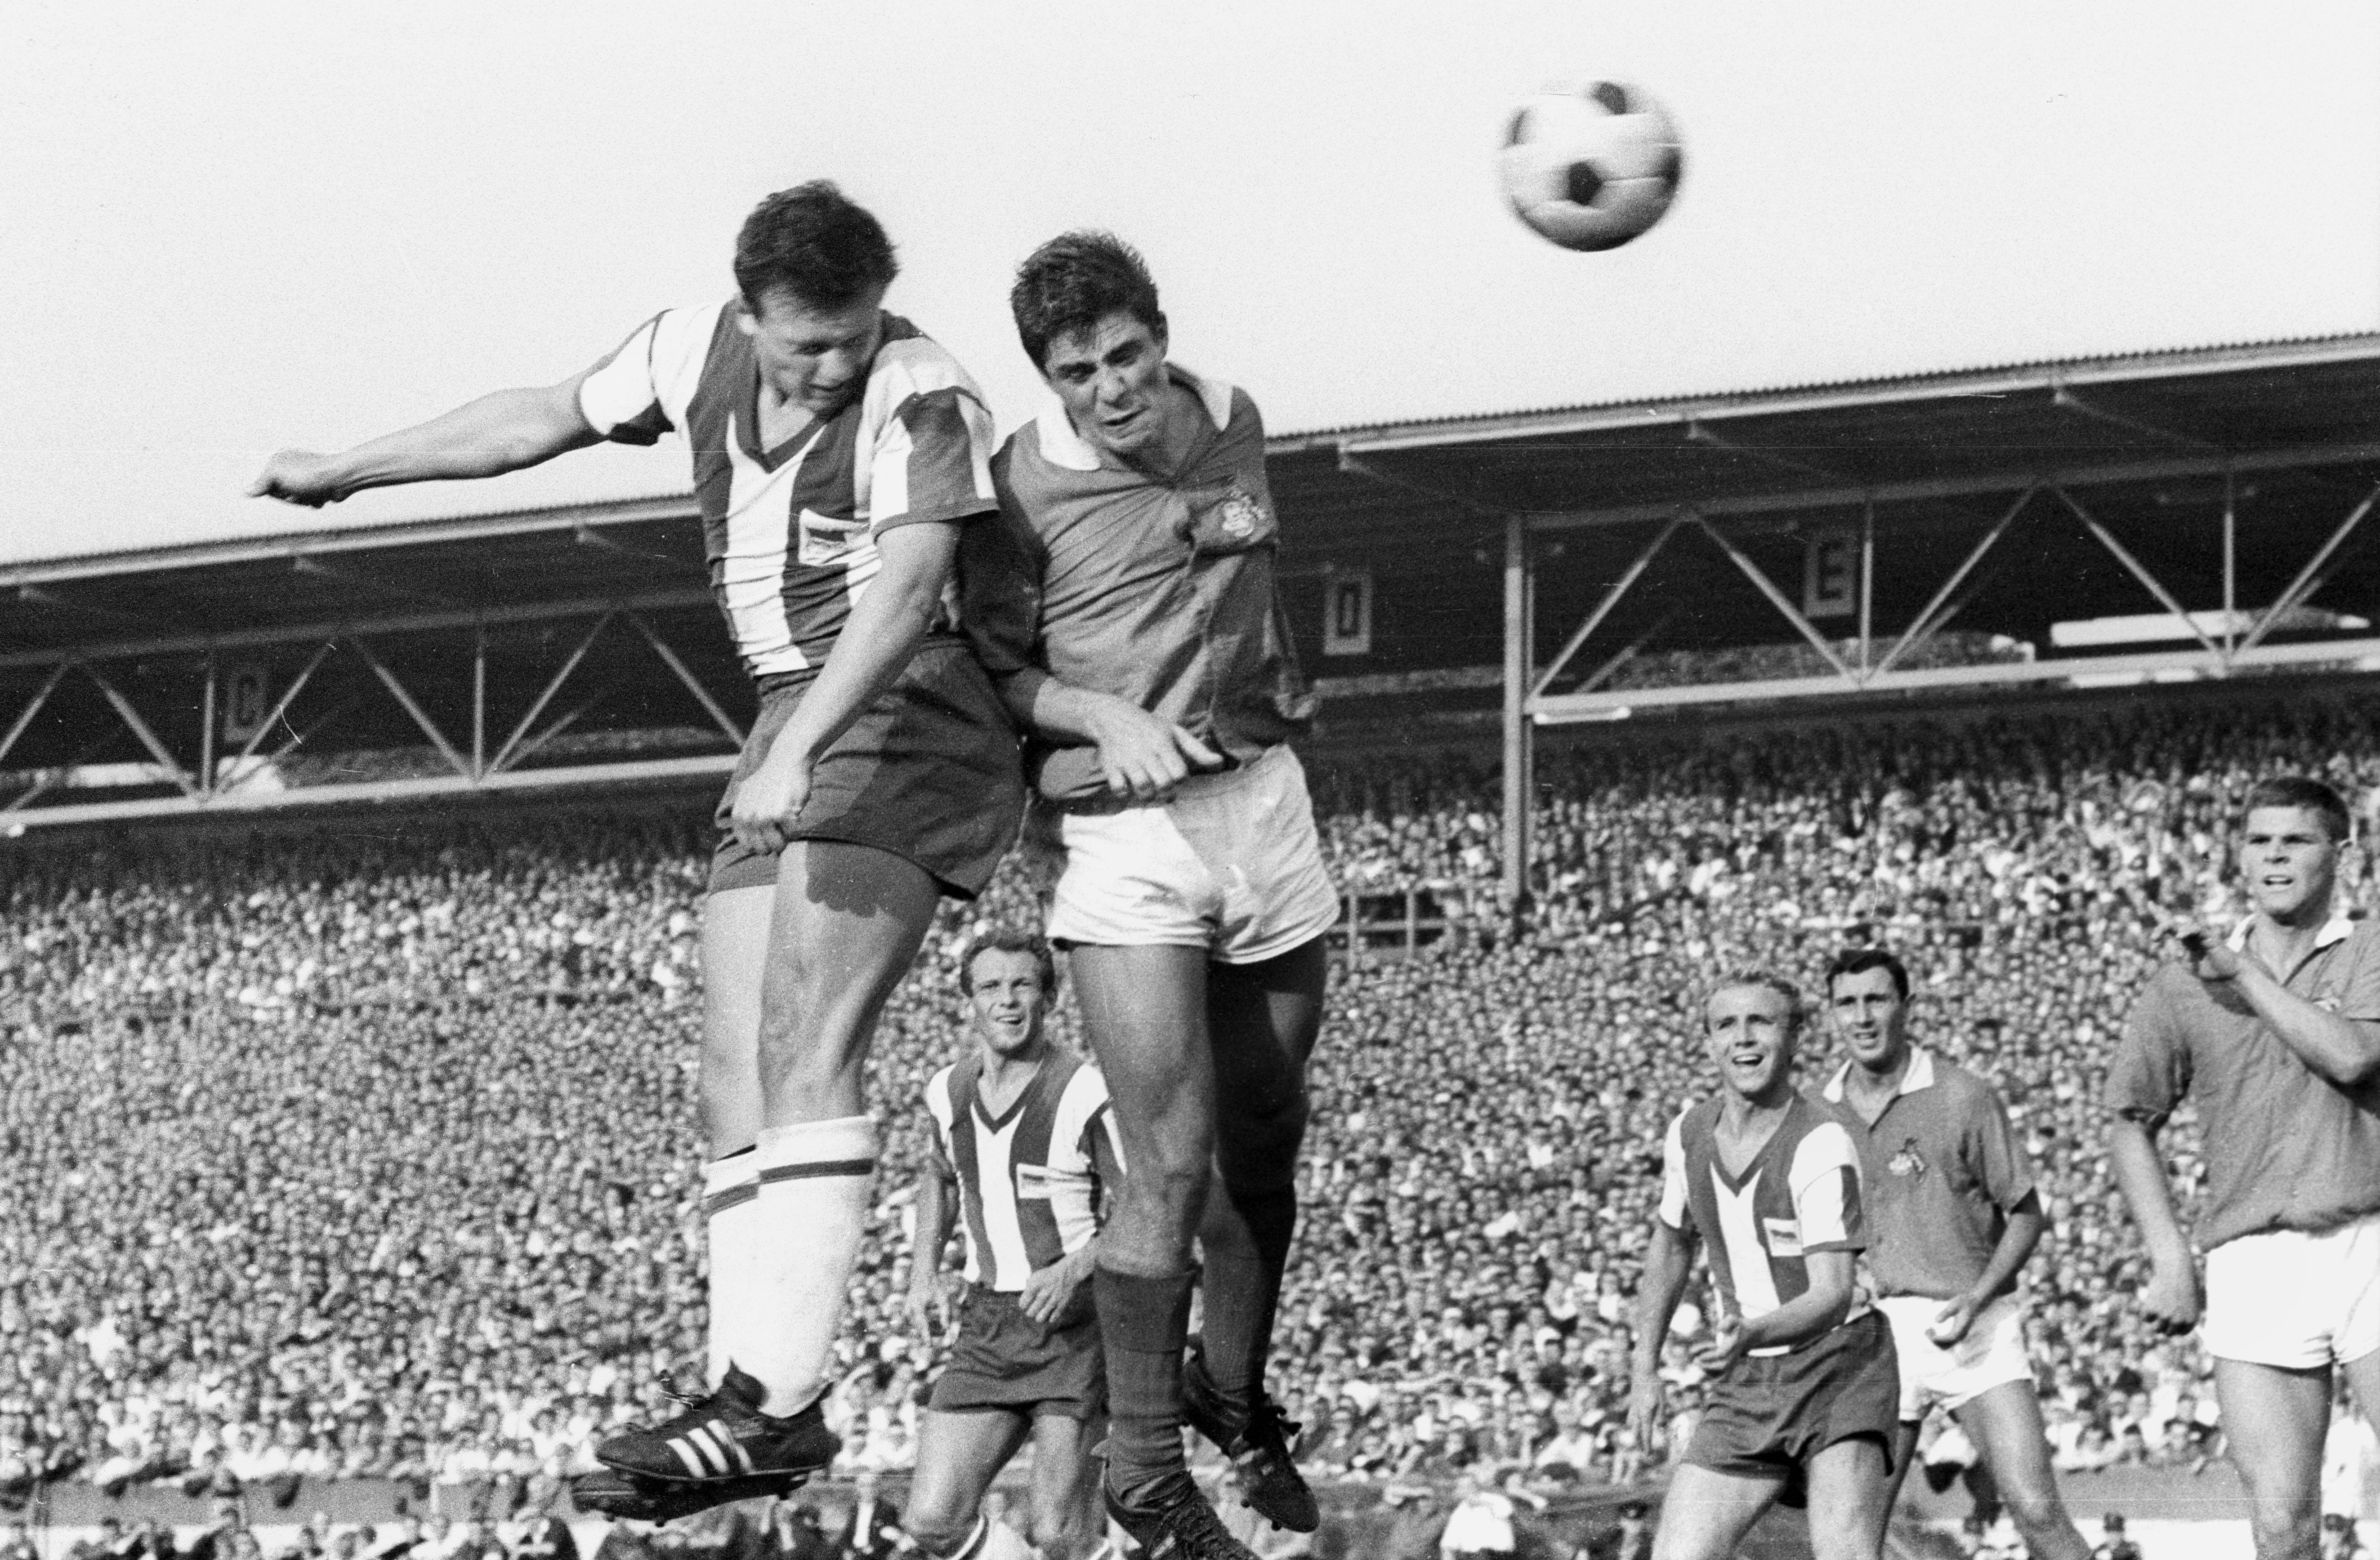 Kopfballduell zwischen einem Herthaner und einem Kölner im Jahr 1964.